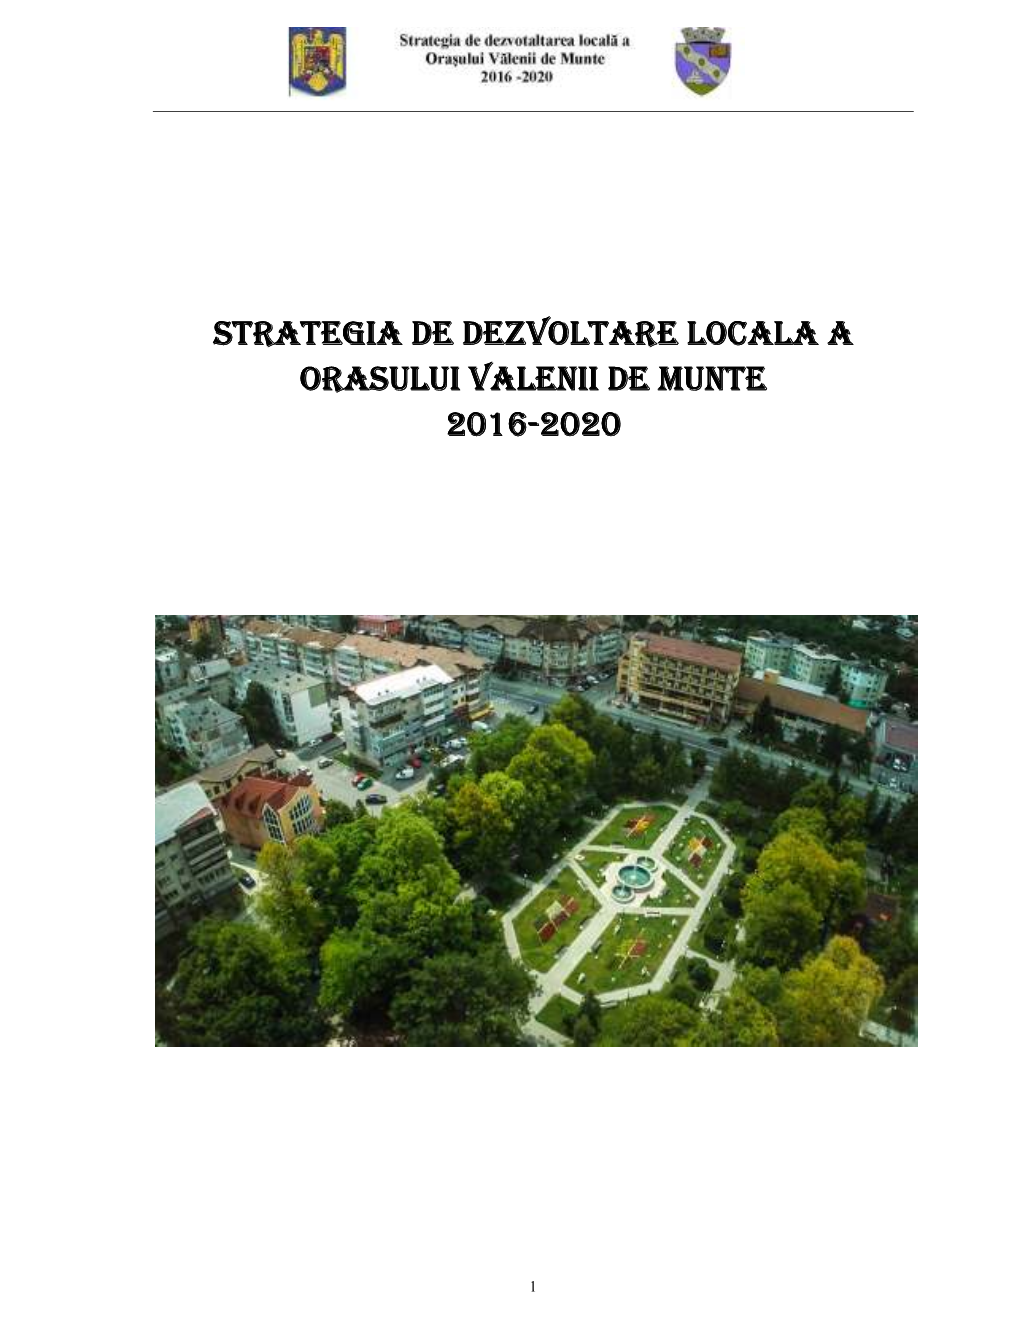 Strategia De Dezvoltare Locala a Orasului Valenii De Munte